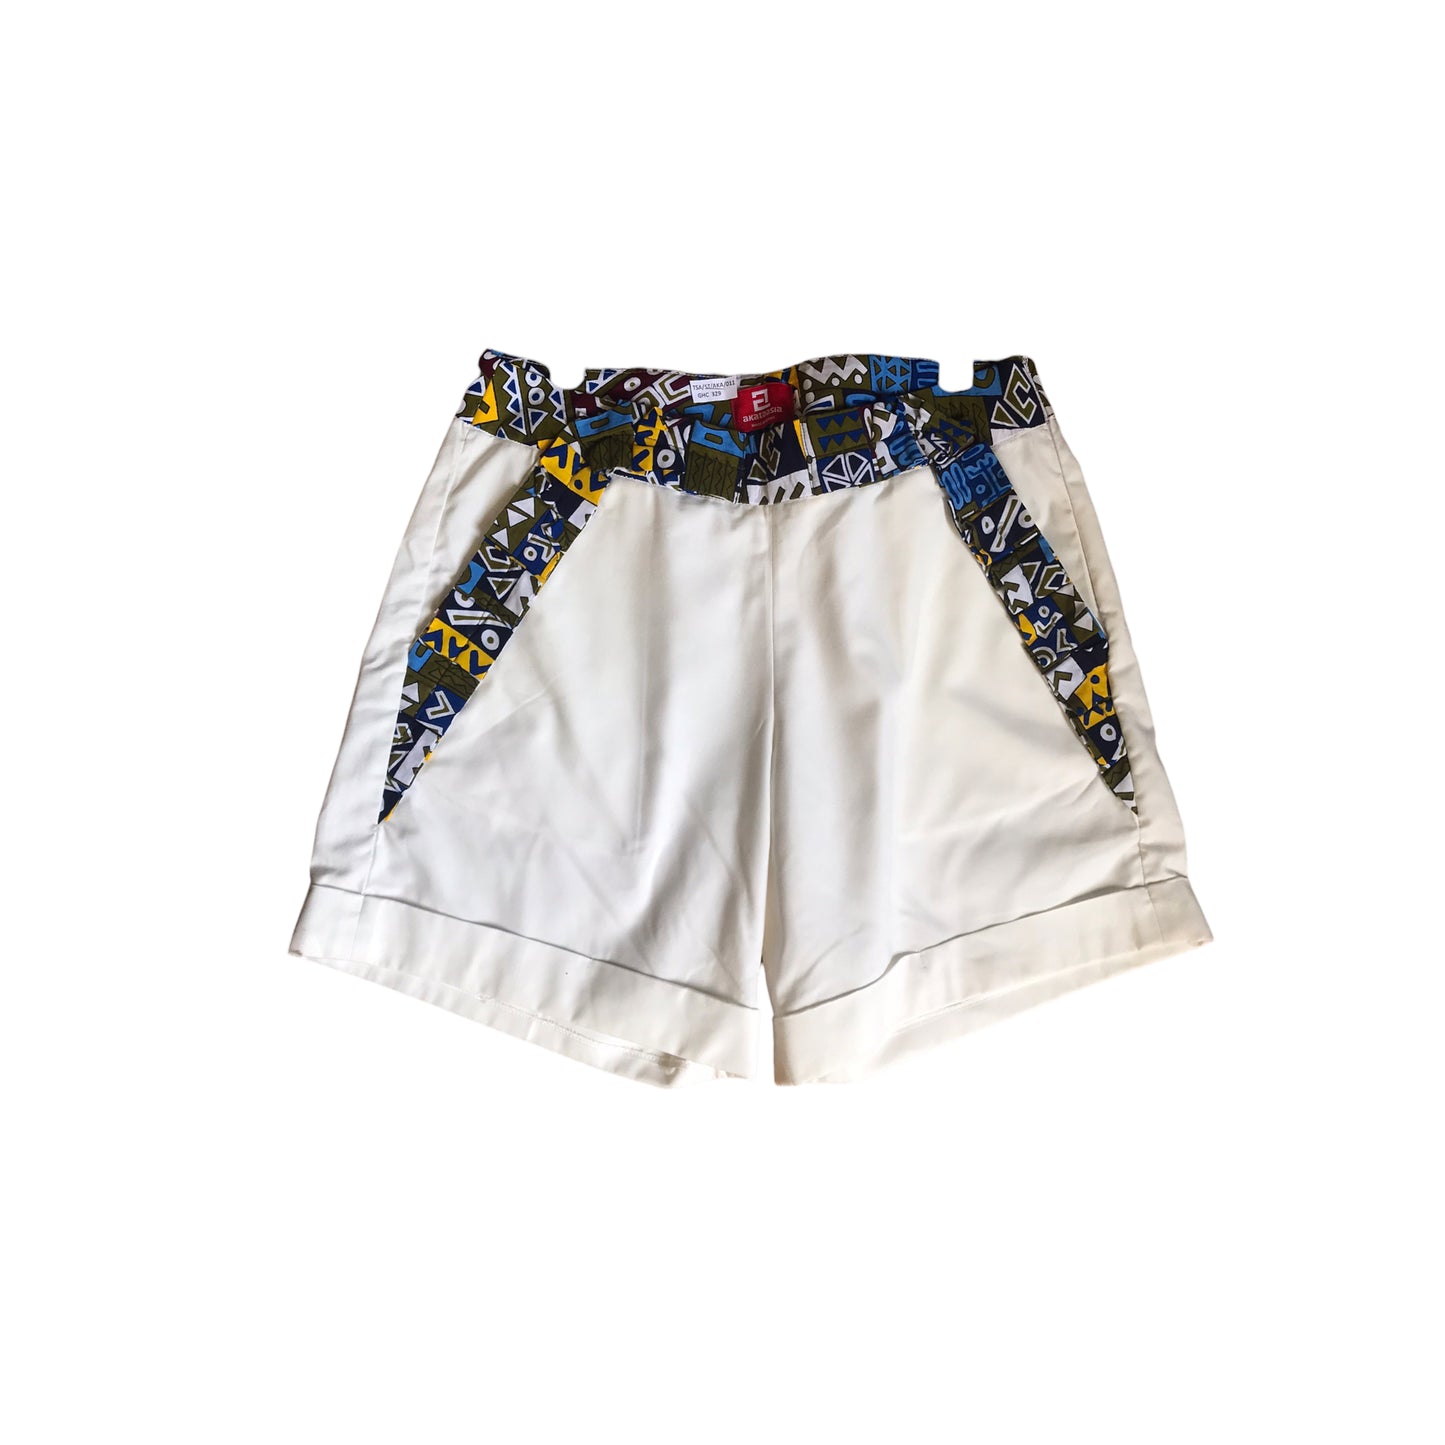 Marshmallow White Shorts